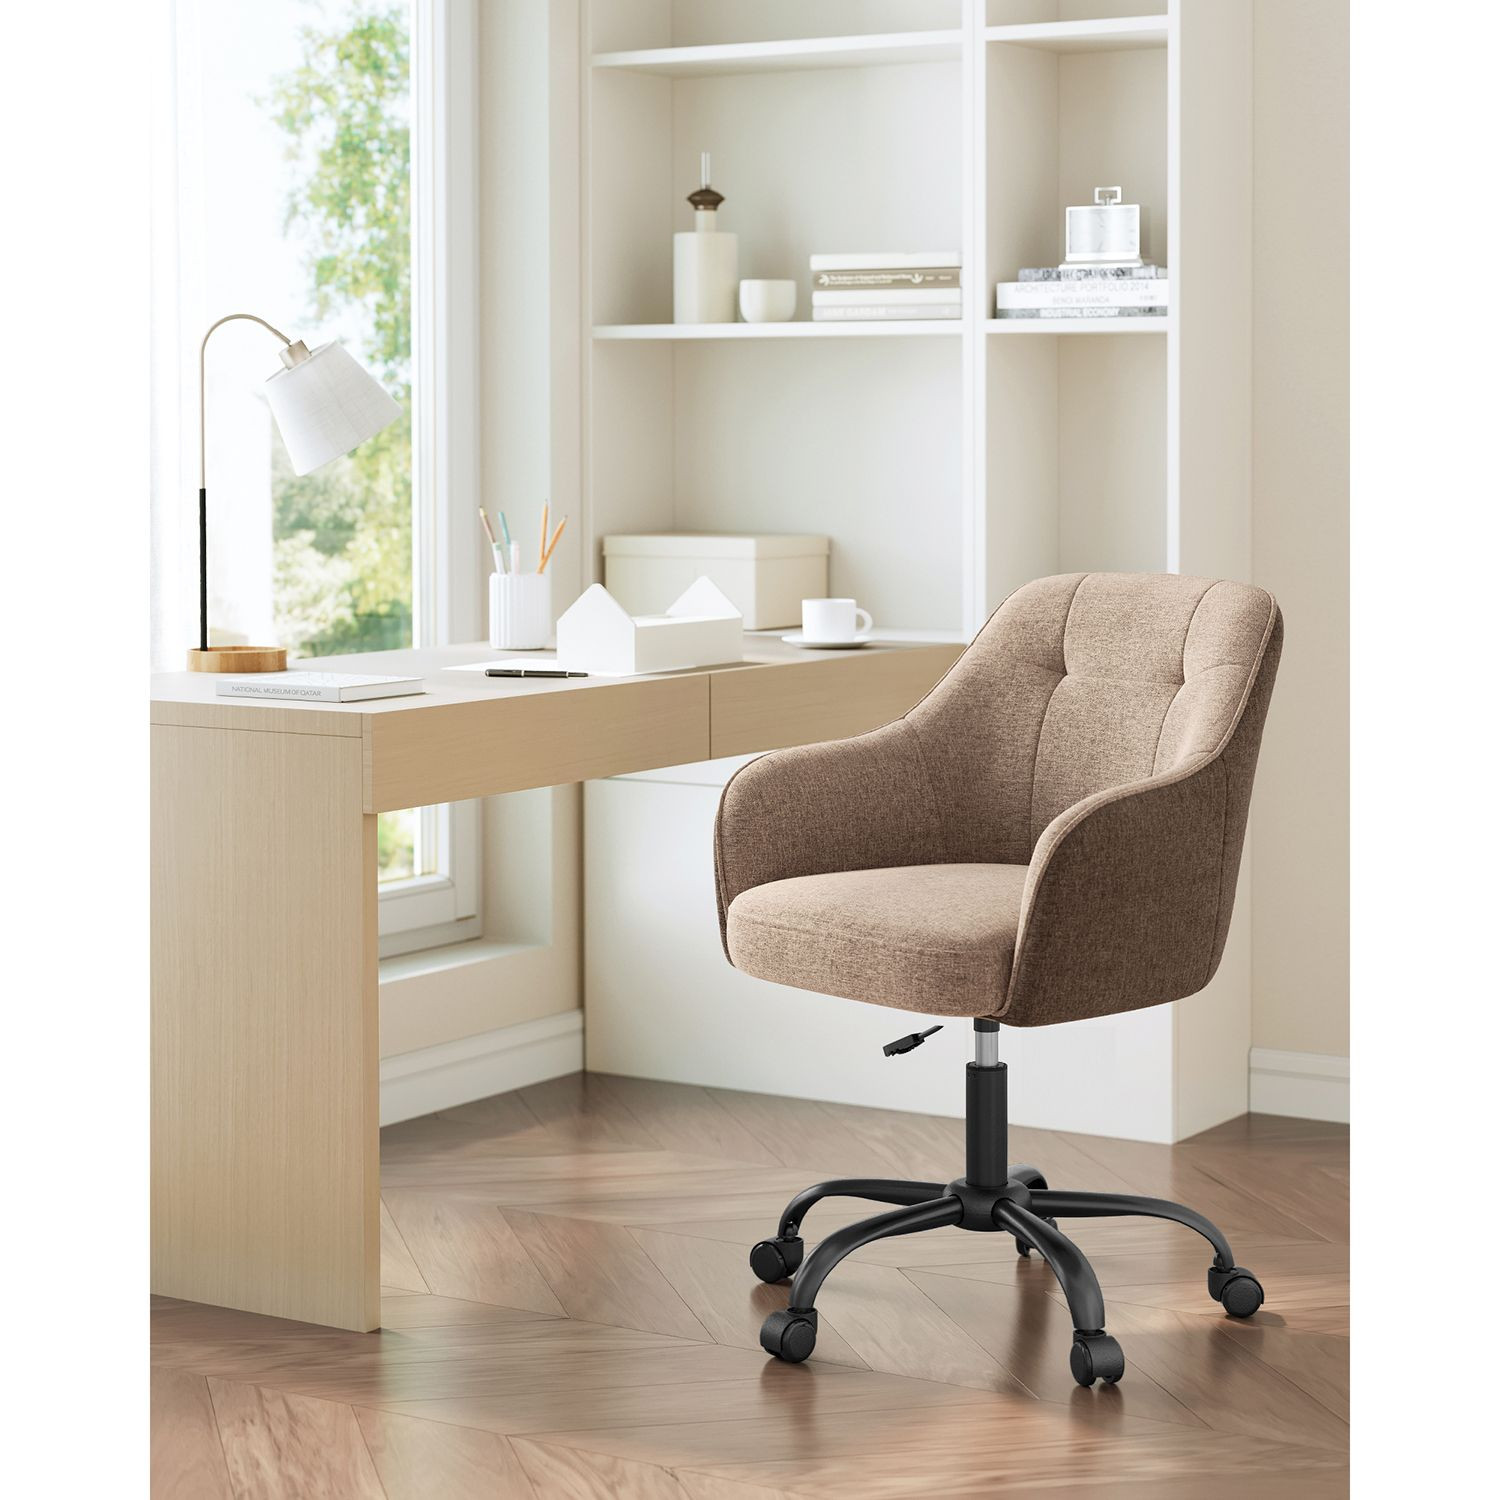 Kancelářská židle OBG019K01